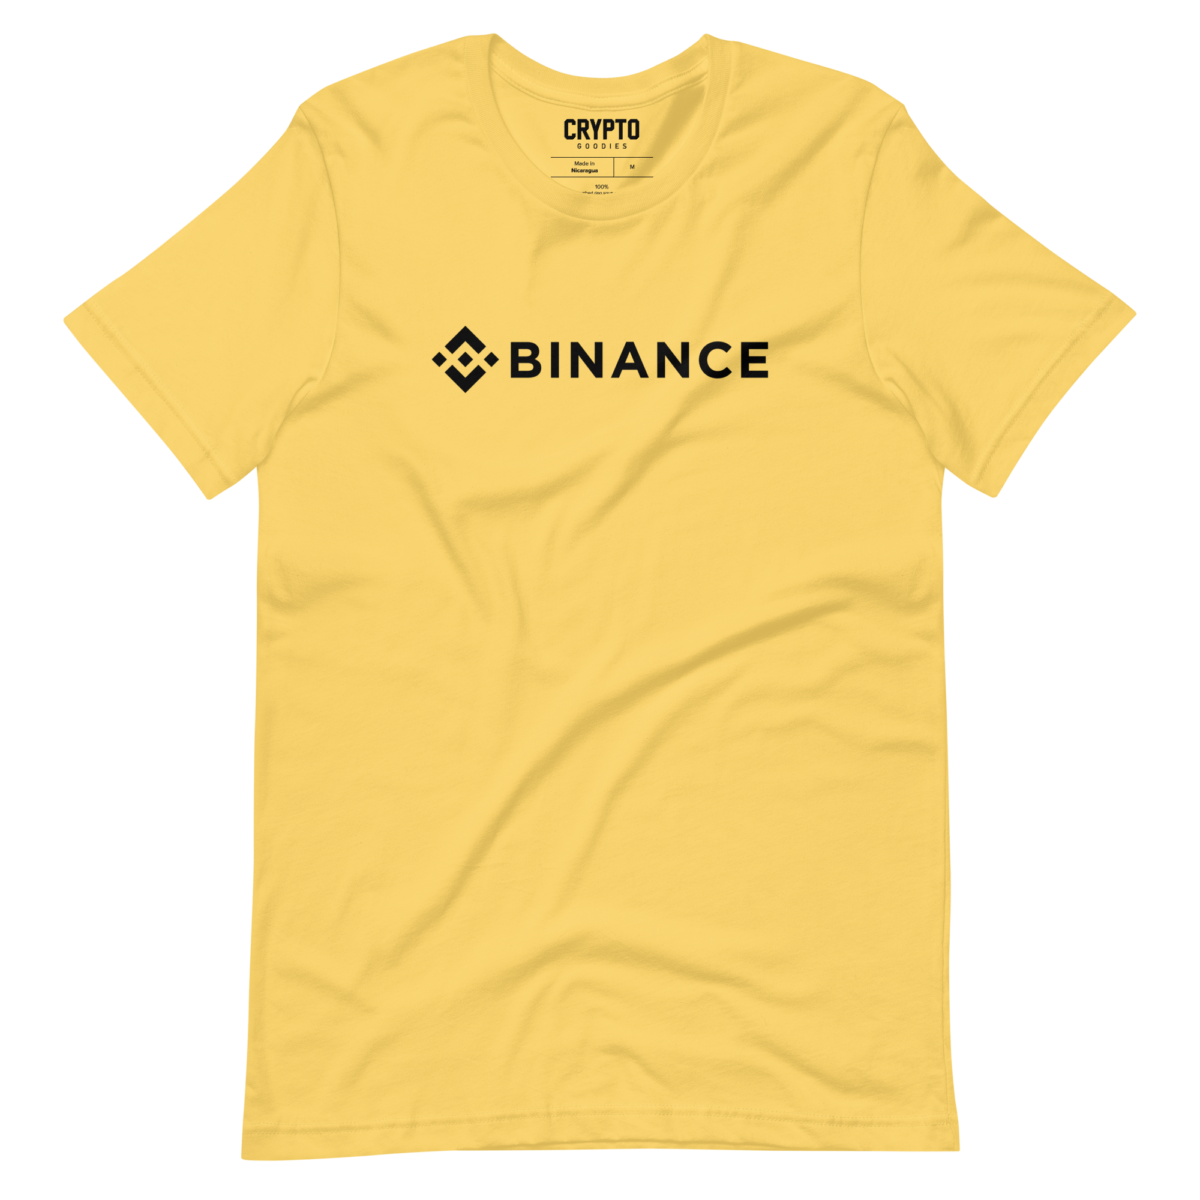 unisex staple t shirt yellow front 63175296933b2 - Binance T-Shirt